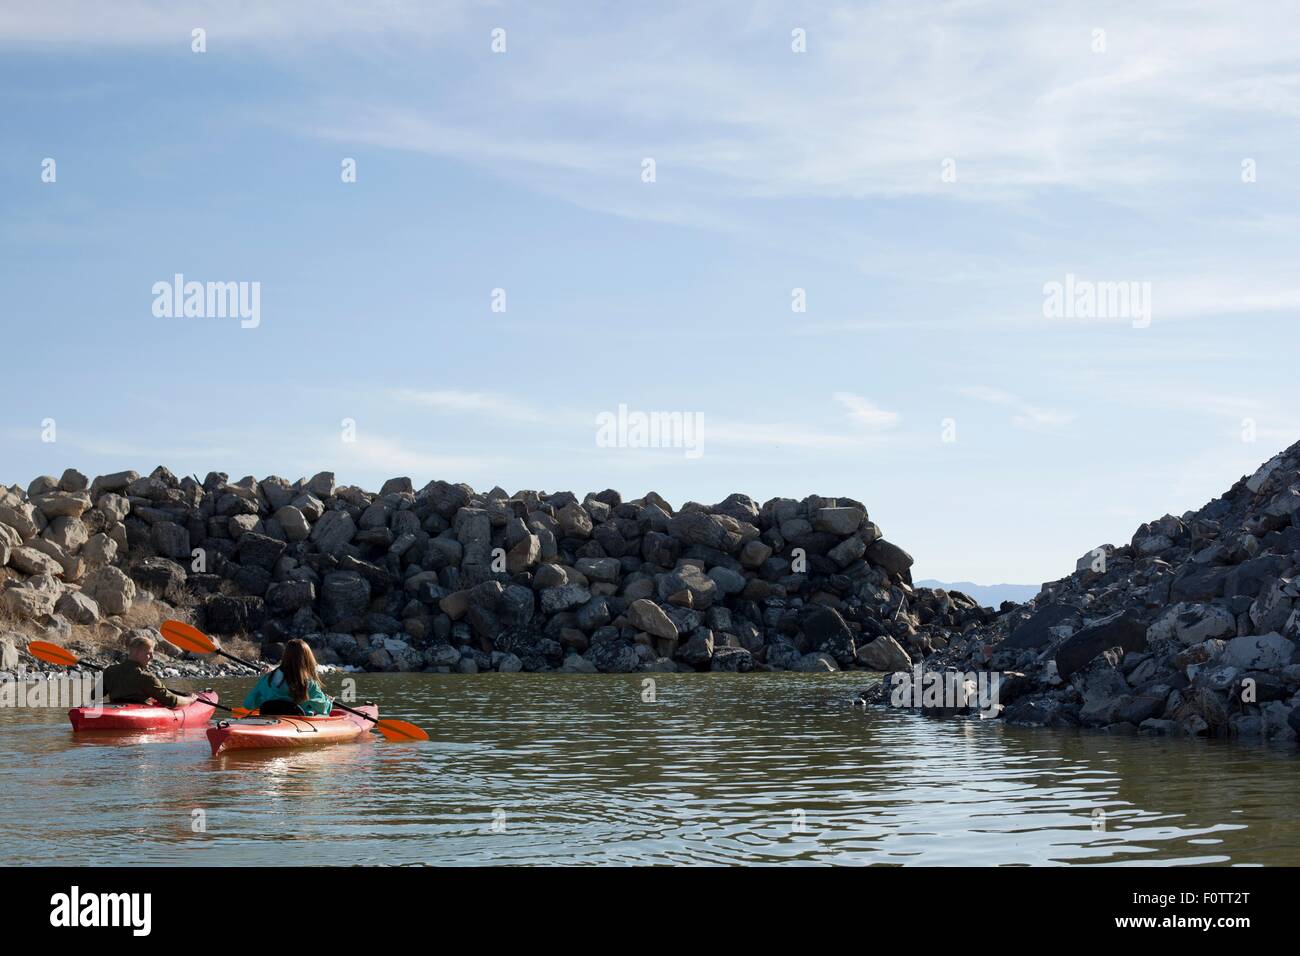 Rear view of kayakers sitting on water in kayaks facing rocks, Great Salt Lake, Utah, USA Stock Photo